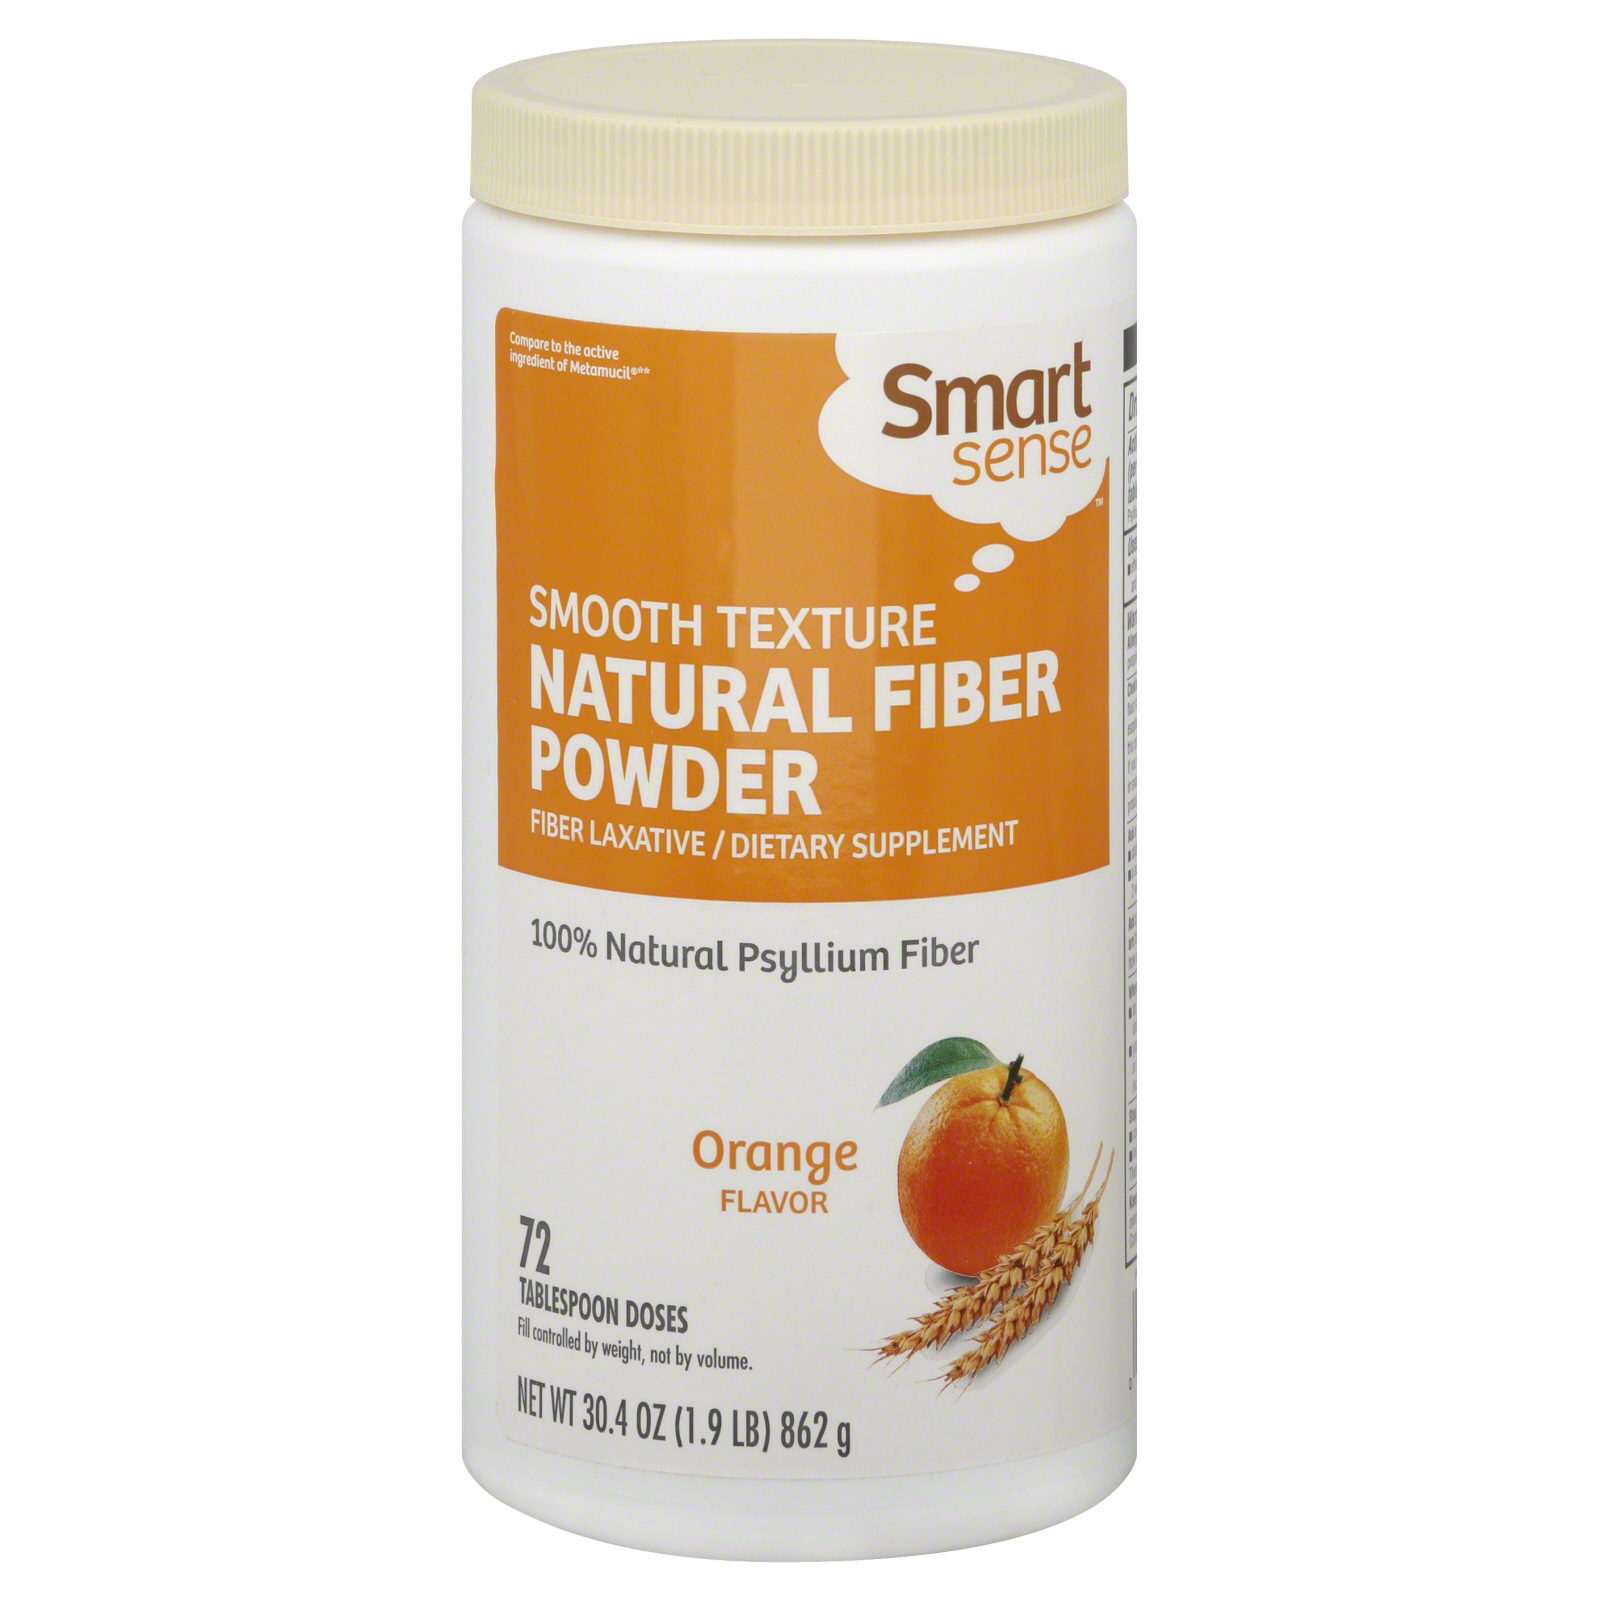 Fiber Laxative, Natural Fiber Powder, Orange 72 doses (30.4 oz [1.9 lb] 862 g)